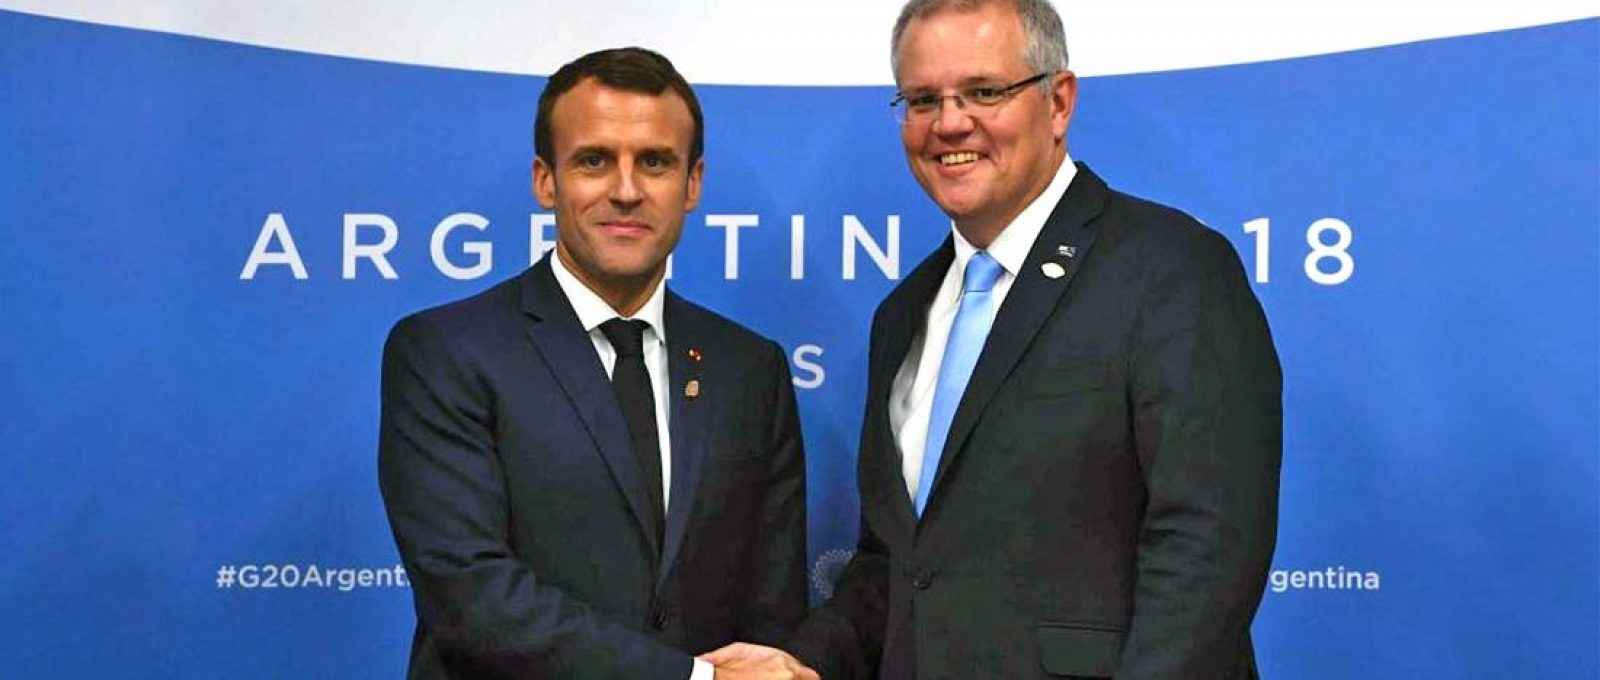 O presidente francês, Emmanuel Macron, e o primeiro-ministro australiano, Scott Morrison, discutiram o projeto do submarino da Austrália durante a XIII Cúpula do G20 realizada em Buenos Aires, Argentina, em novembro/dezembro de 2018 (Foto: Lukas Coch/AAP).